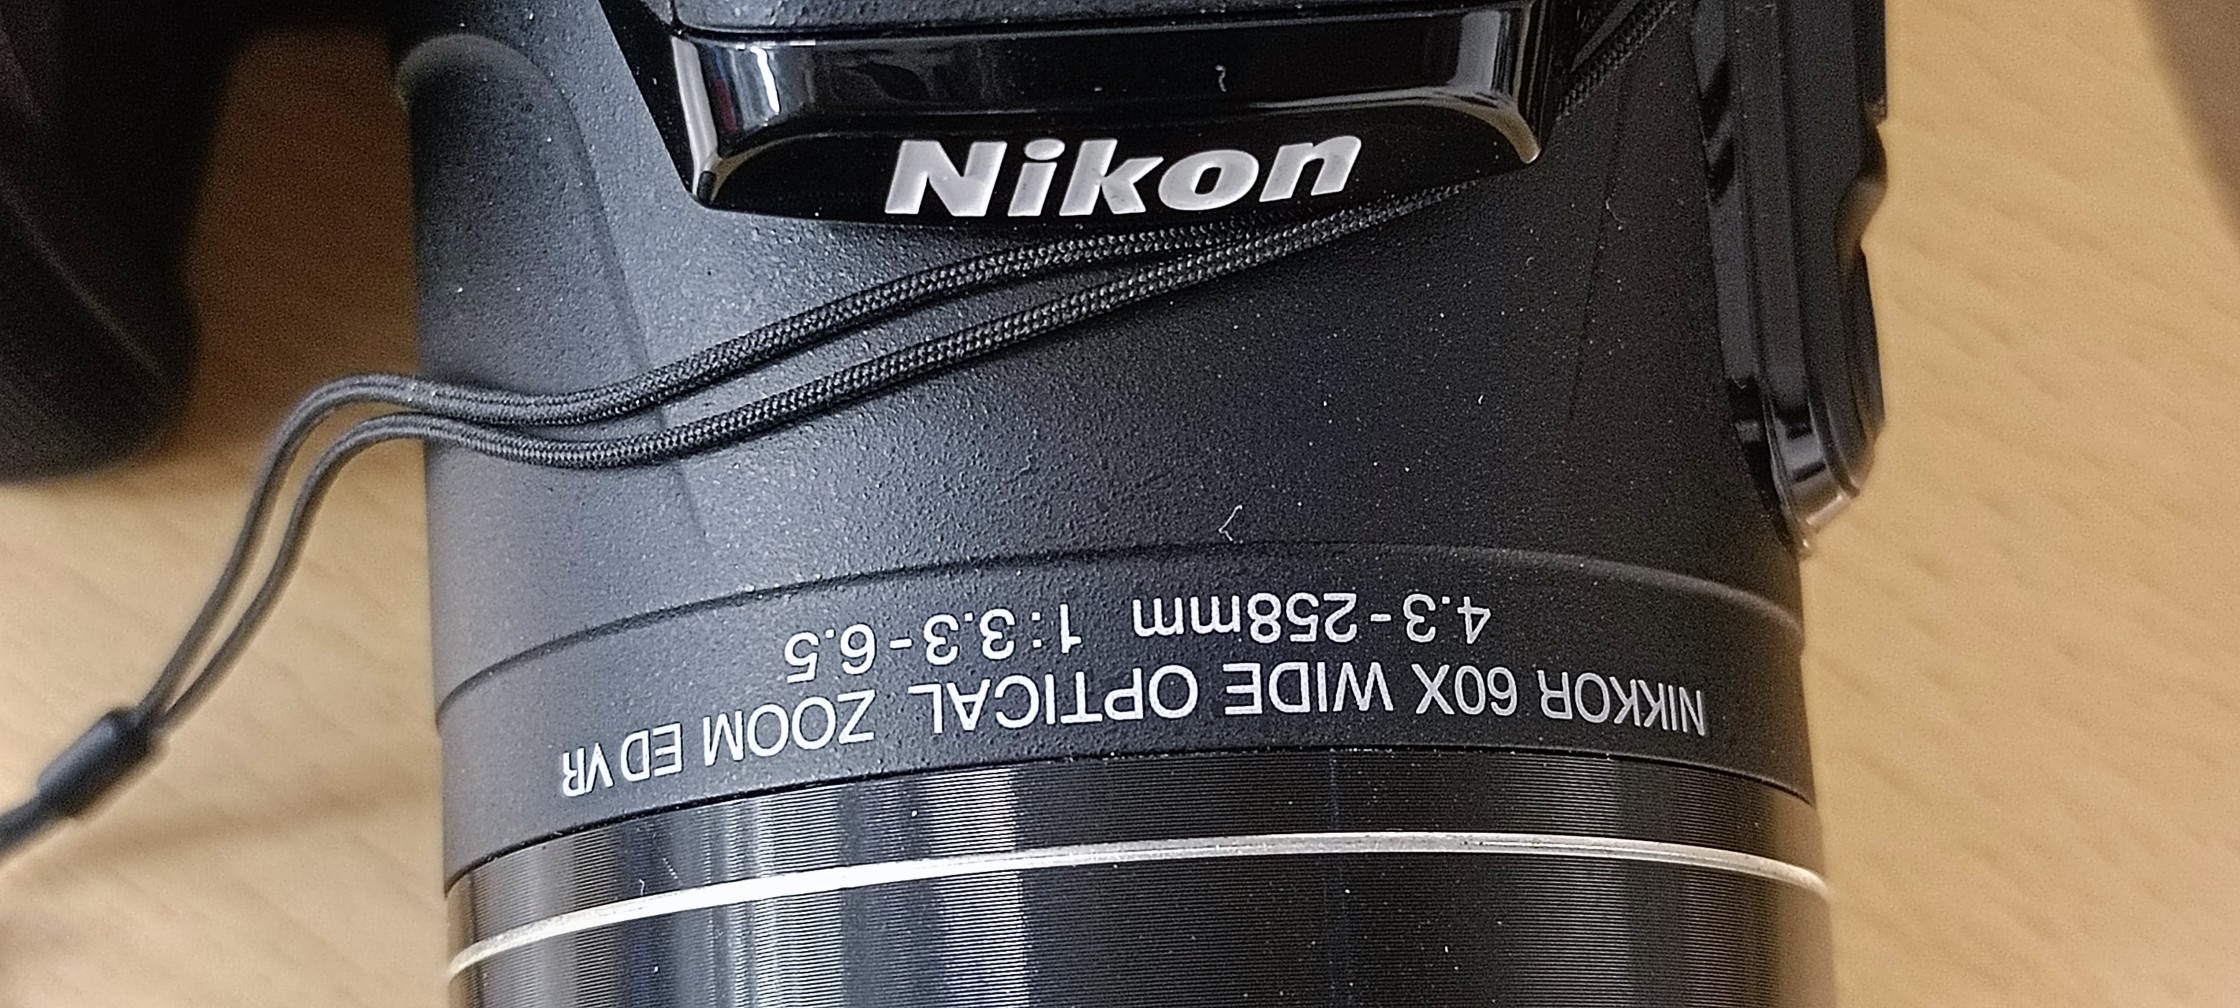 camaras y audio - Nikon Coolpix P610 63x zoom 1440 mm.  Excelentes condiciones 1